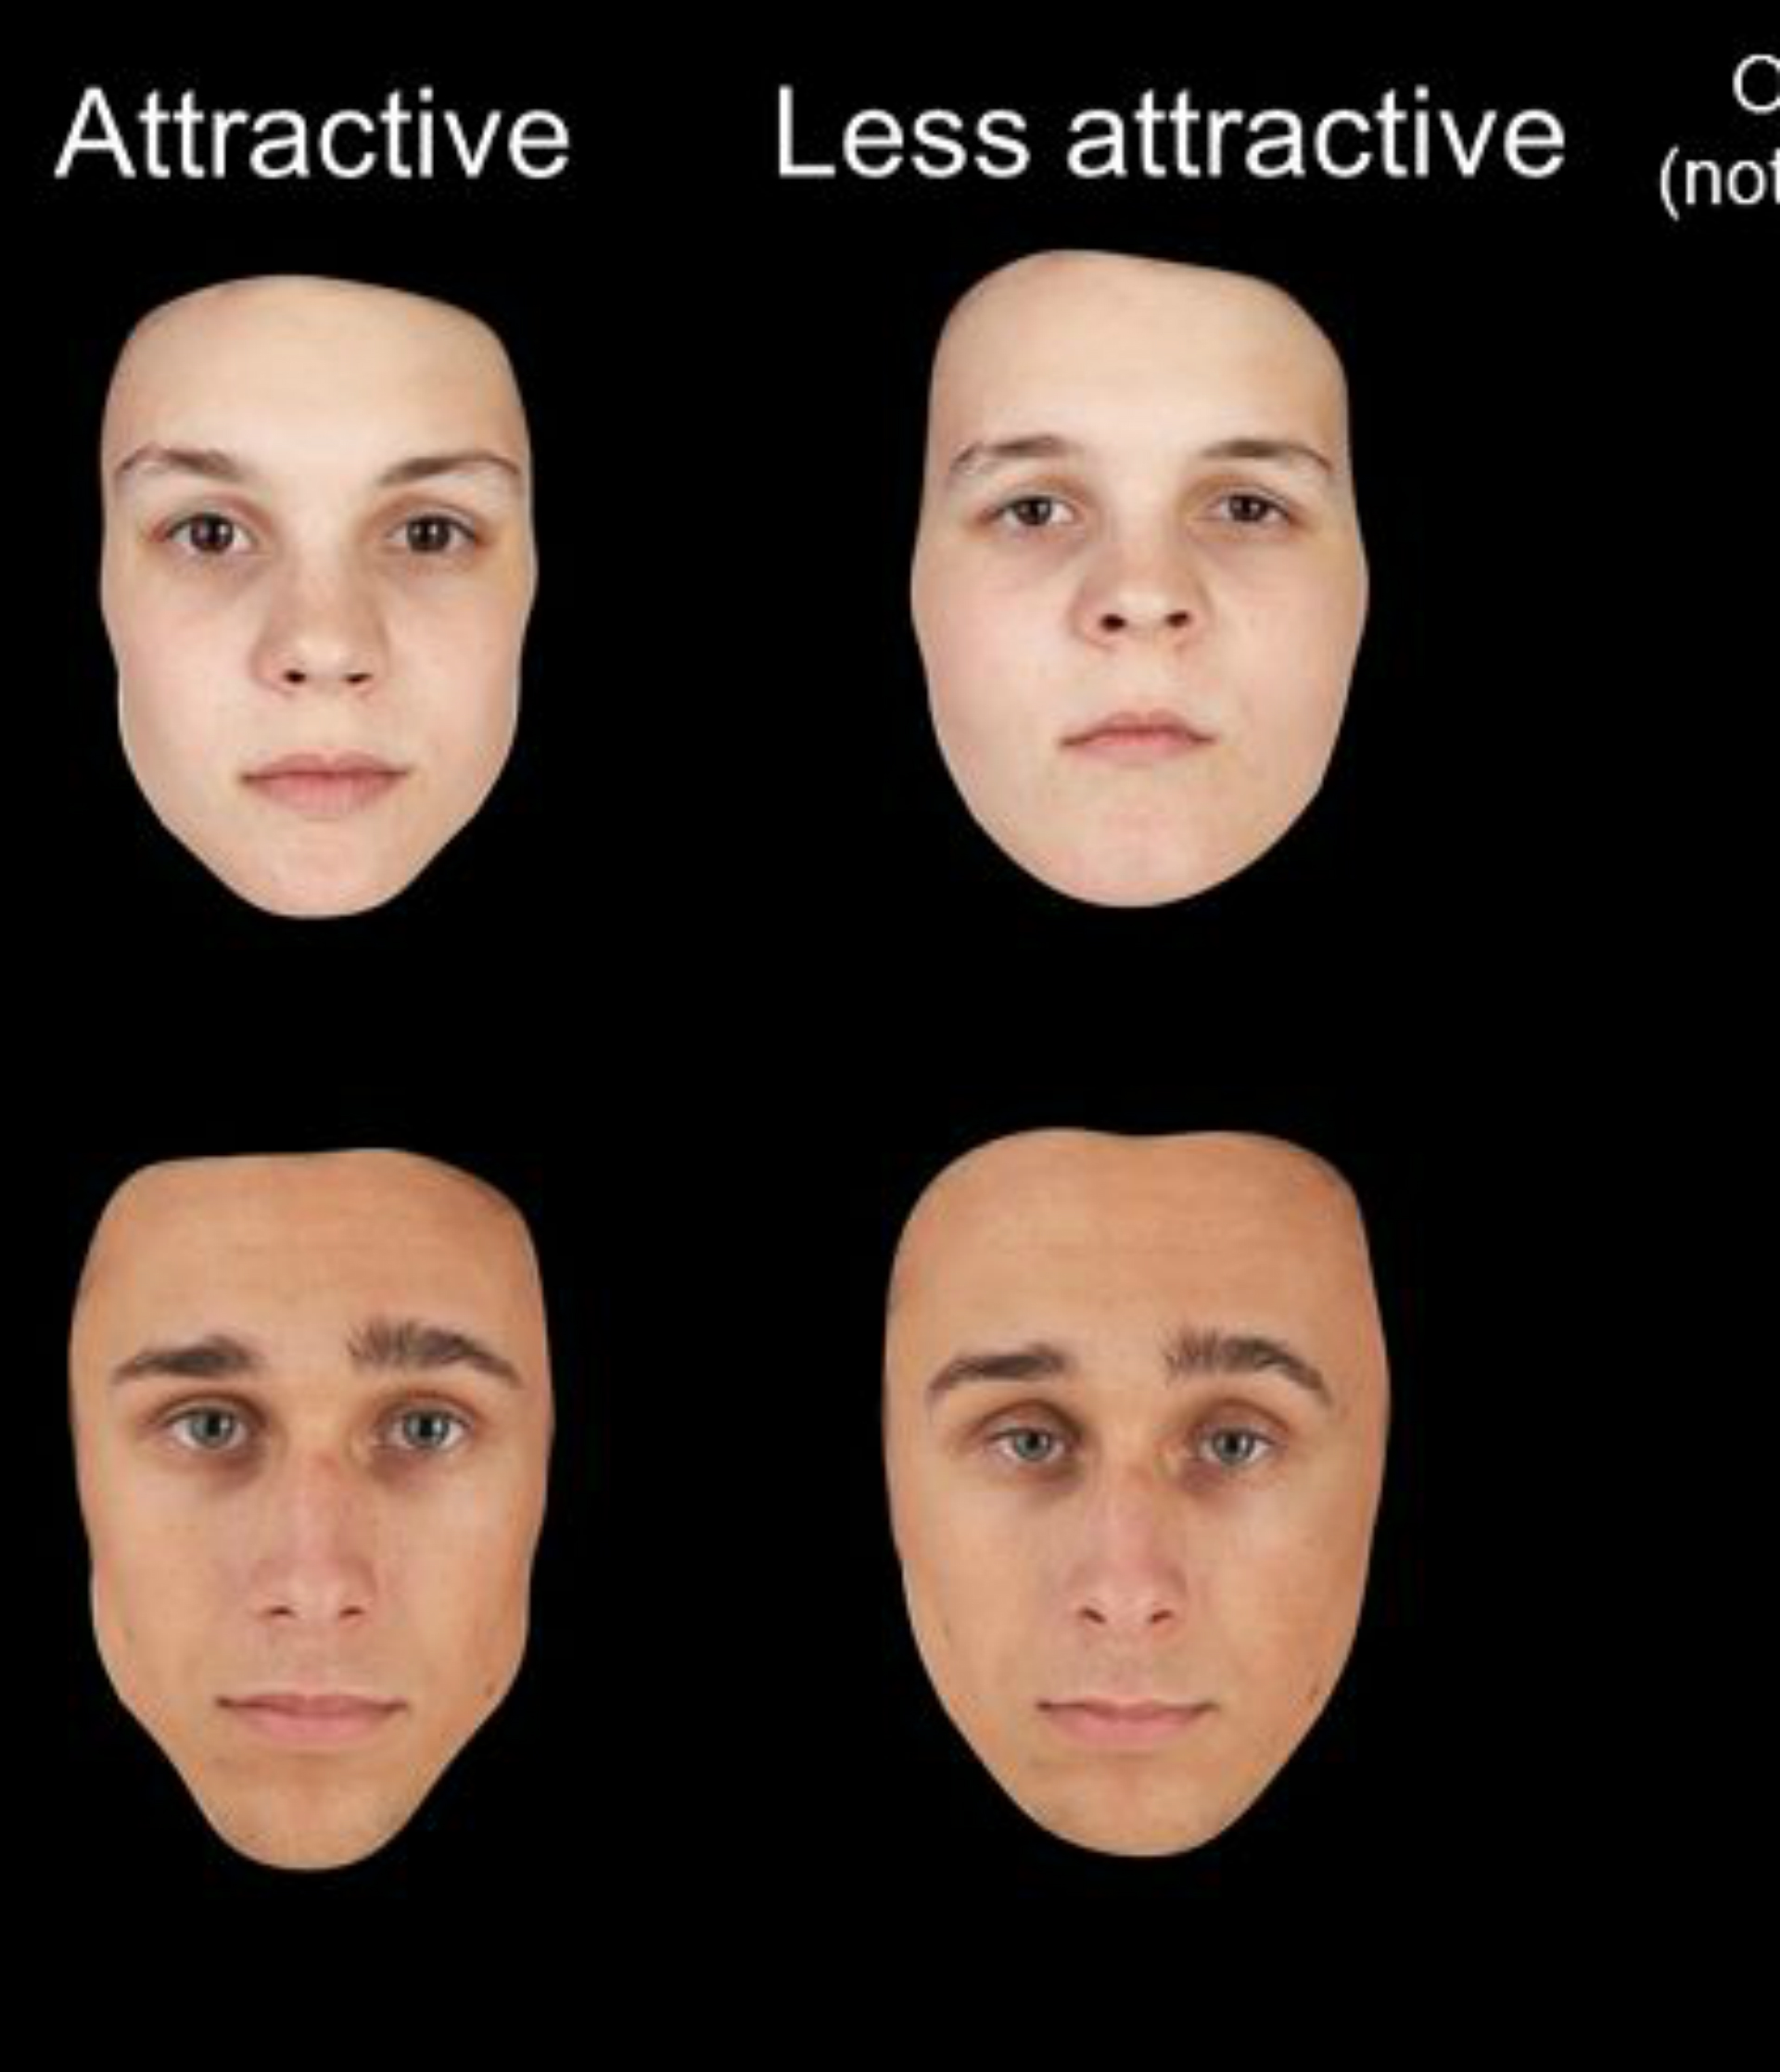 Study shows self-evaluation influences facial memory